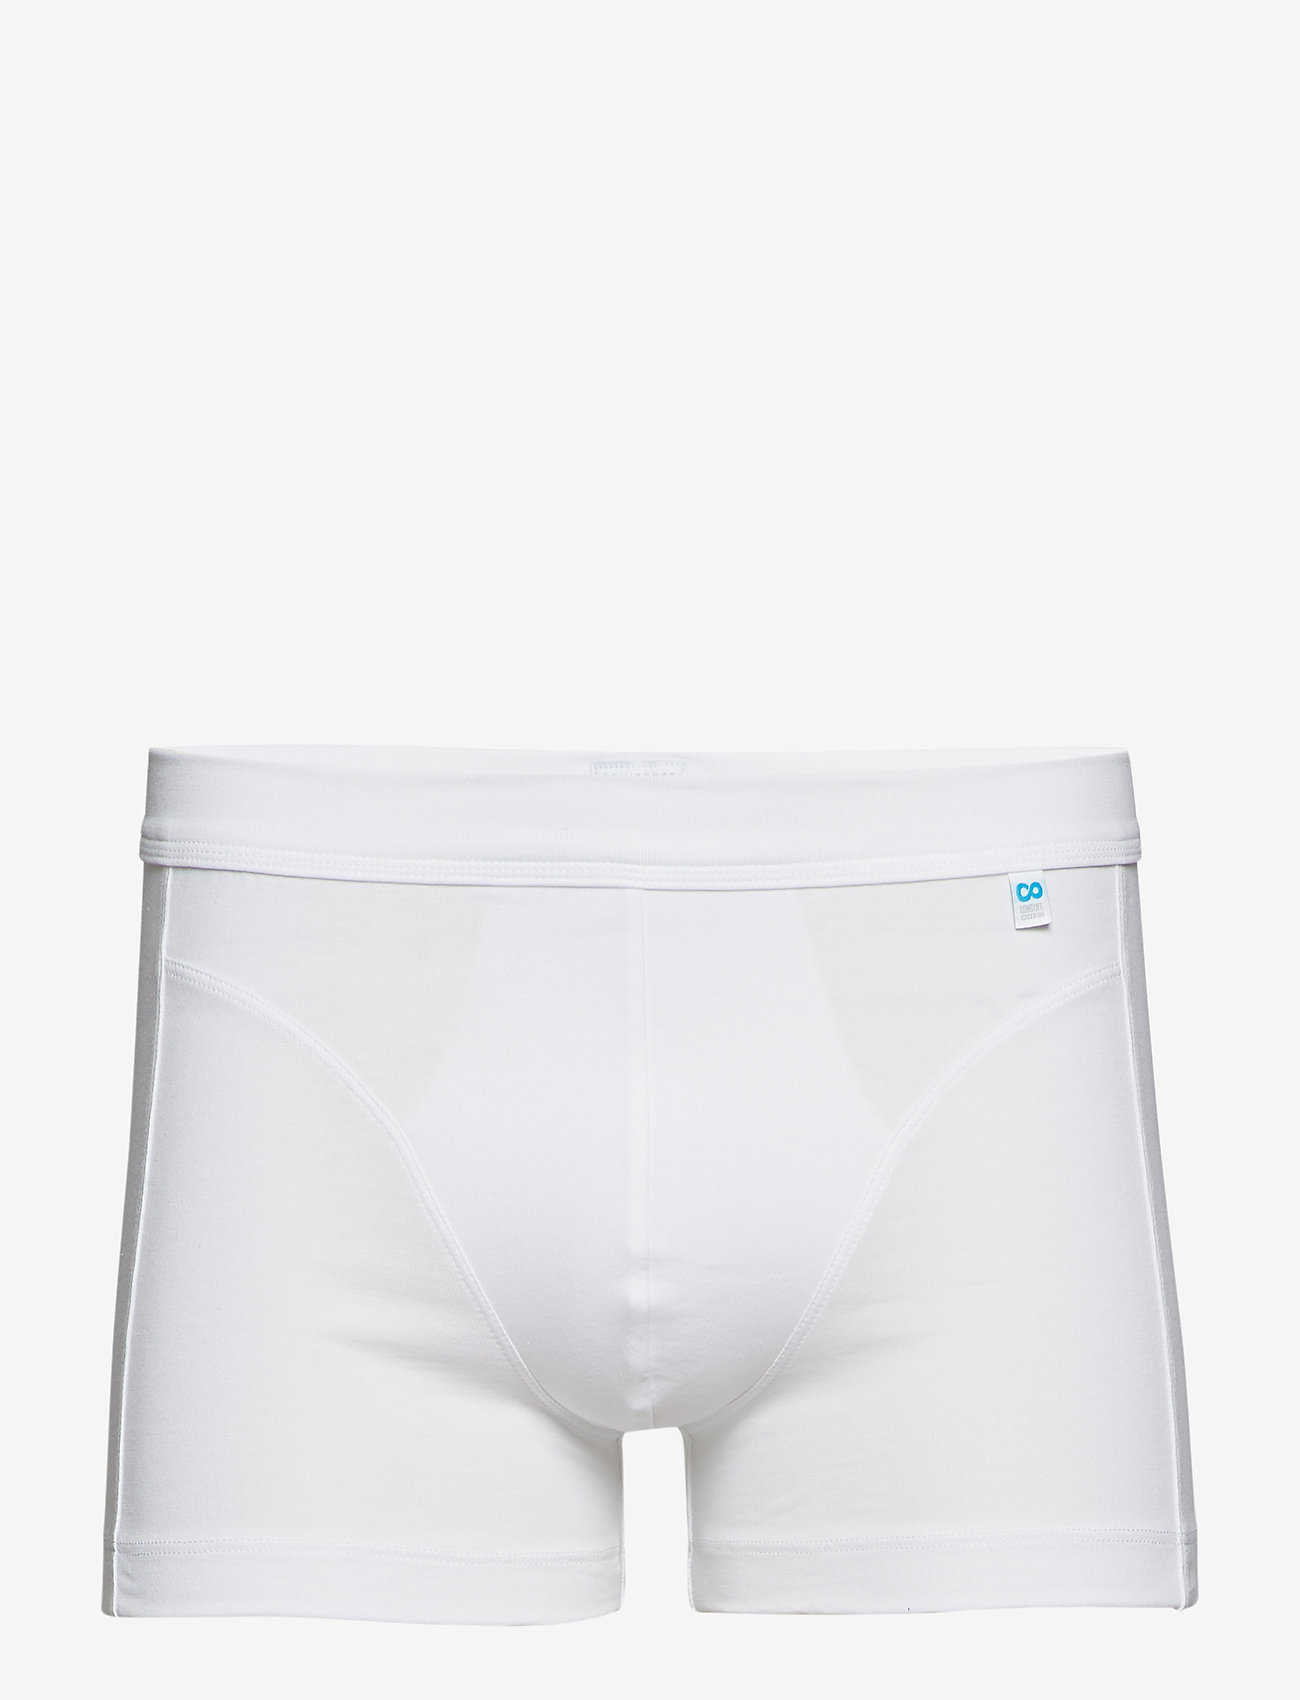 Schiesser - Shorts - zemākās cenas - white - 1